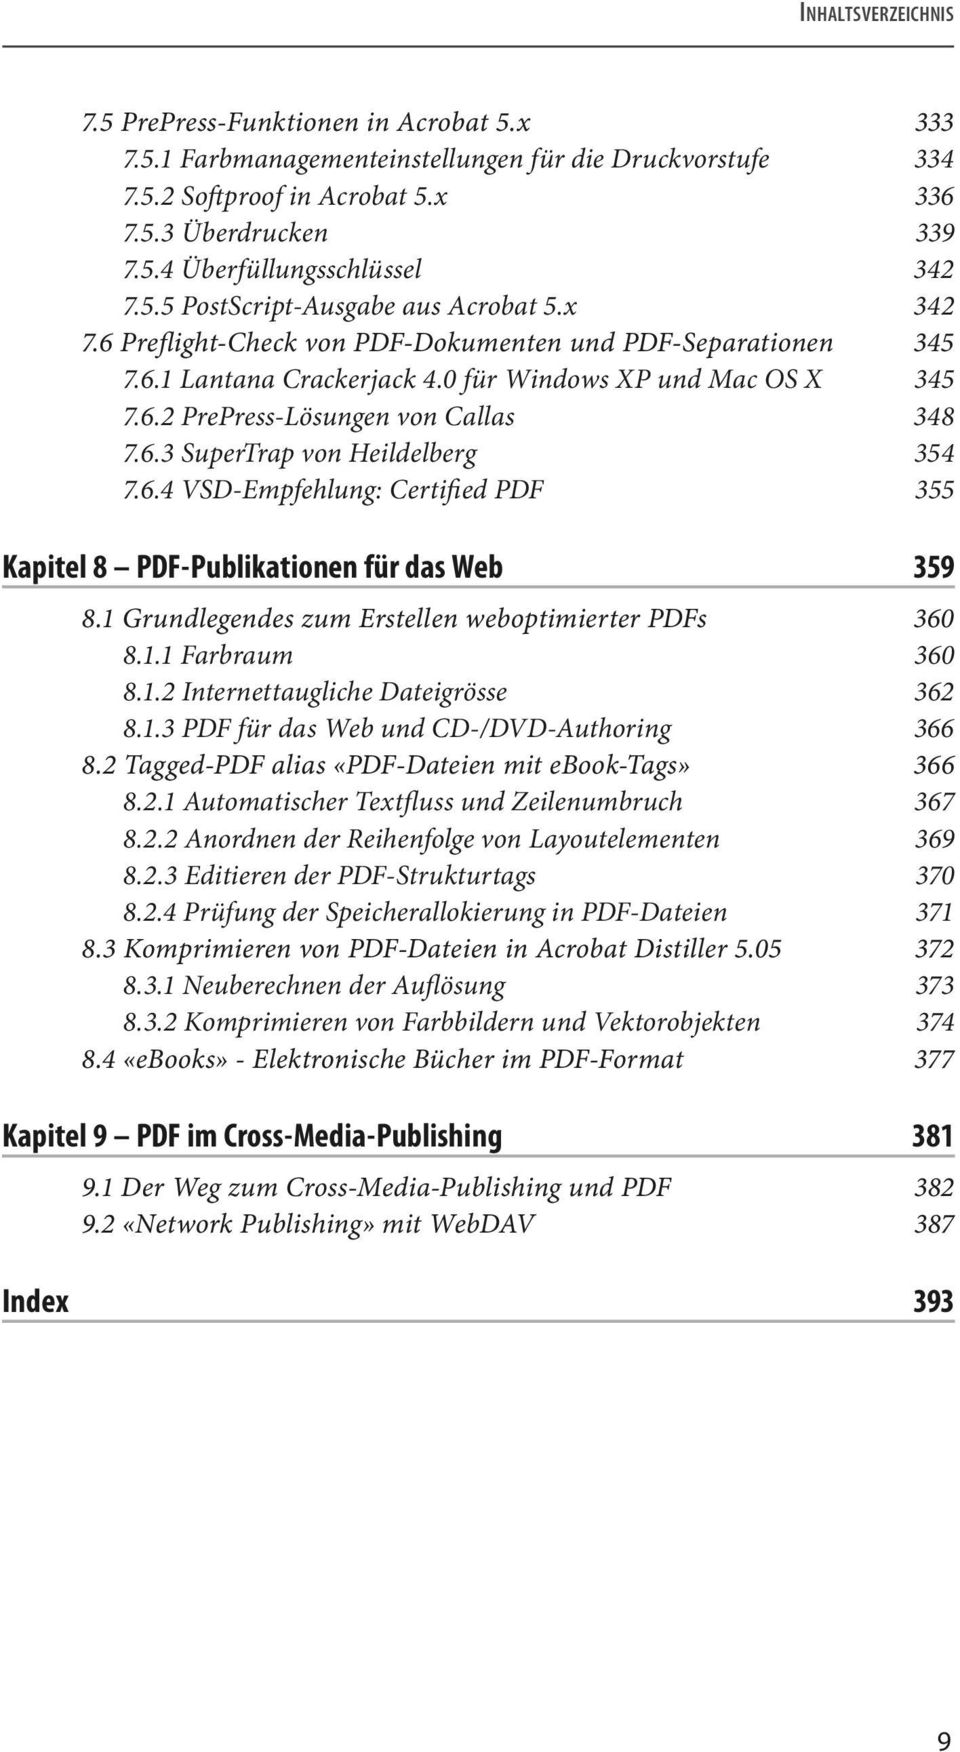 6.3 SuperTrap von Heildelberg 354 7.6.4 VSD-Empfehlung: Certified PDF 355 Kapitel 8 PDF-Publikationen für das Web 359 8.1 Grundlegendes zum Erstellen weboptimierter PDFs 360 8.1.1 Farbraum 360 8.1.2 Internettaugliche Dateigrösse 362 8.